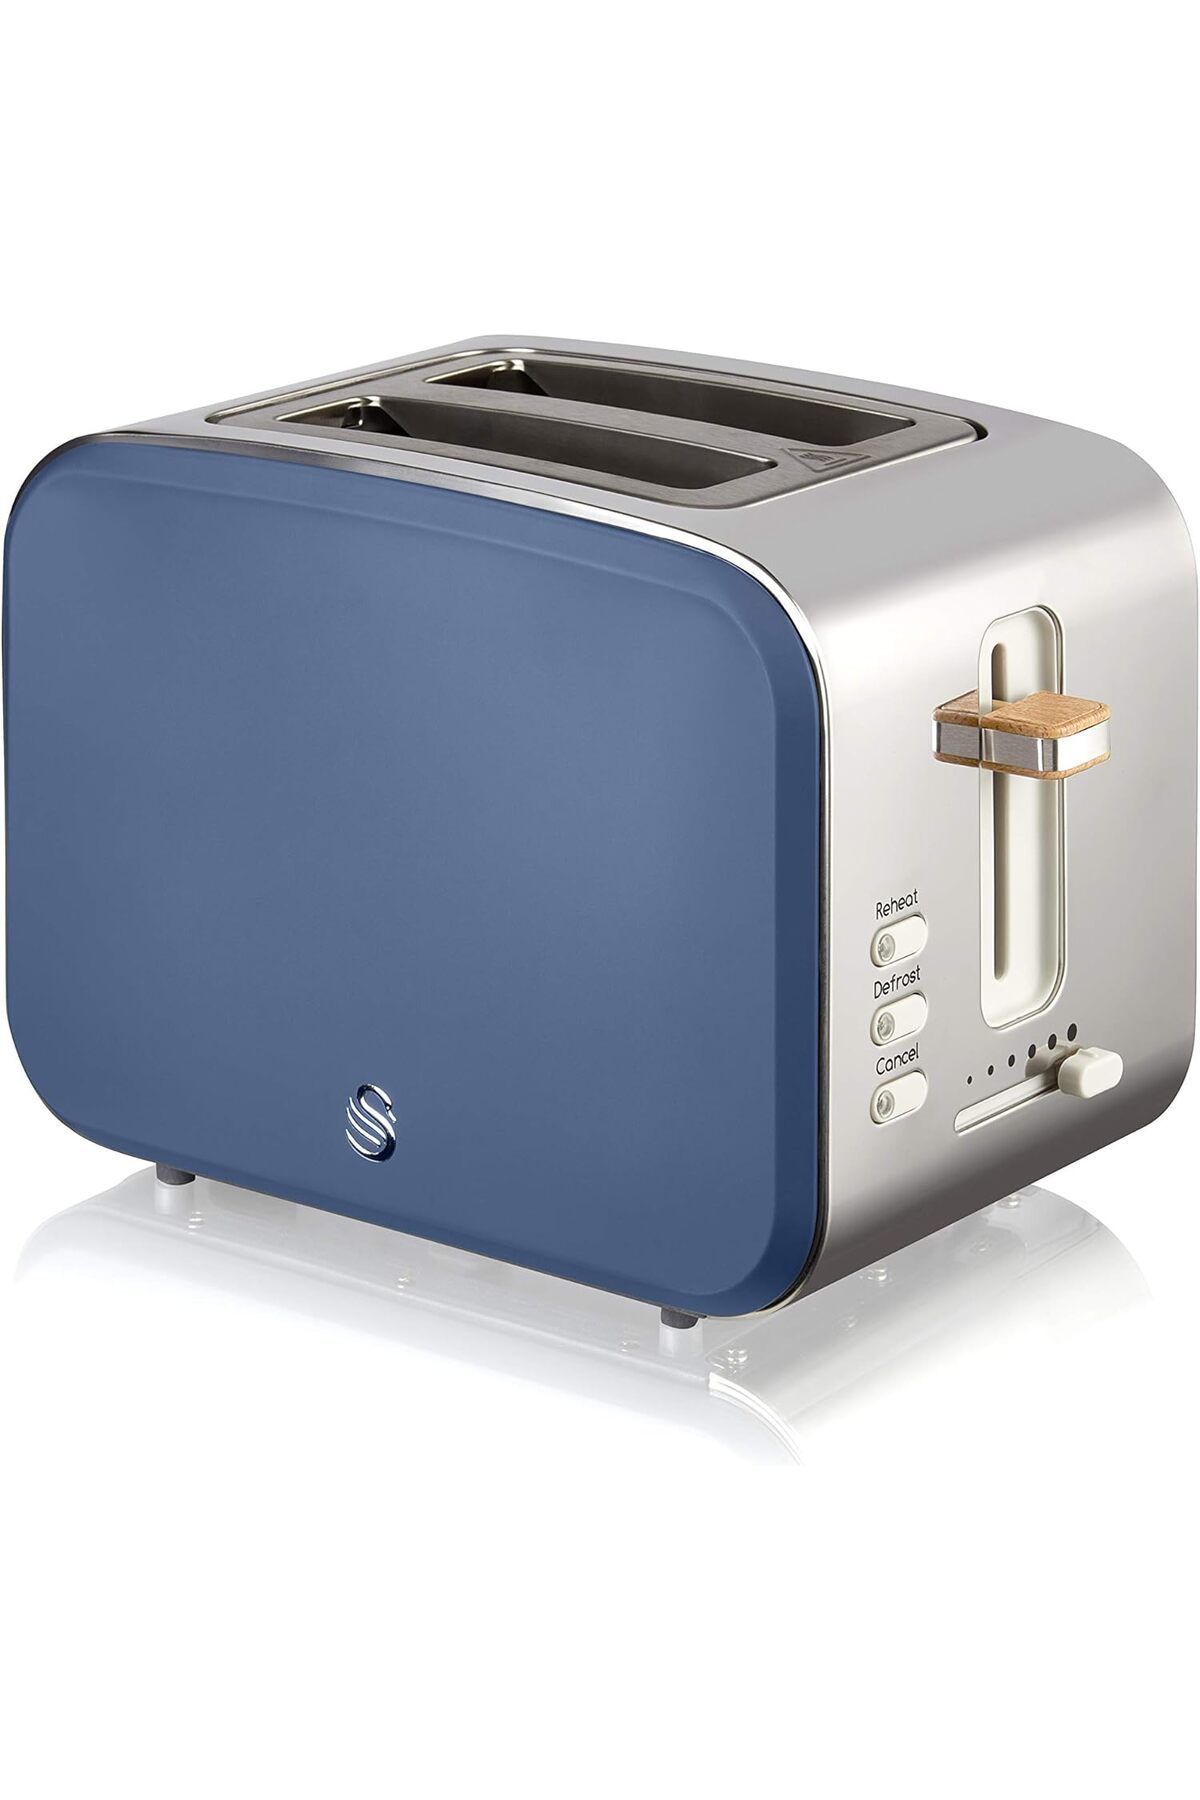 Swann Nordic 2 Dilim Ekmek Kızartma Makinesi Modern Paslanmaz Çelik Tasarım